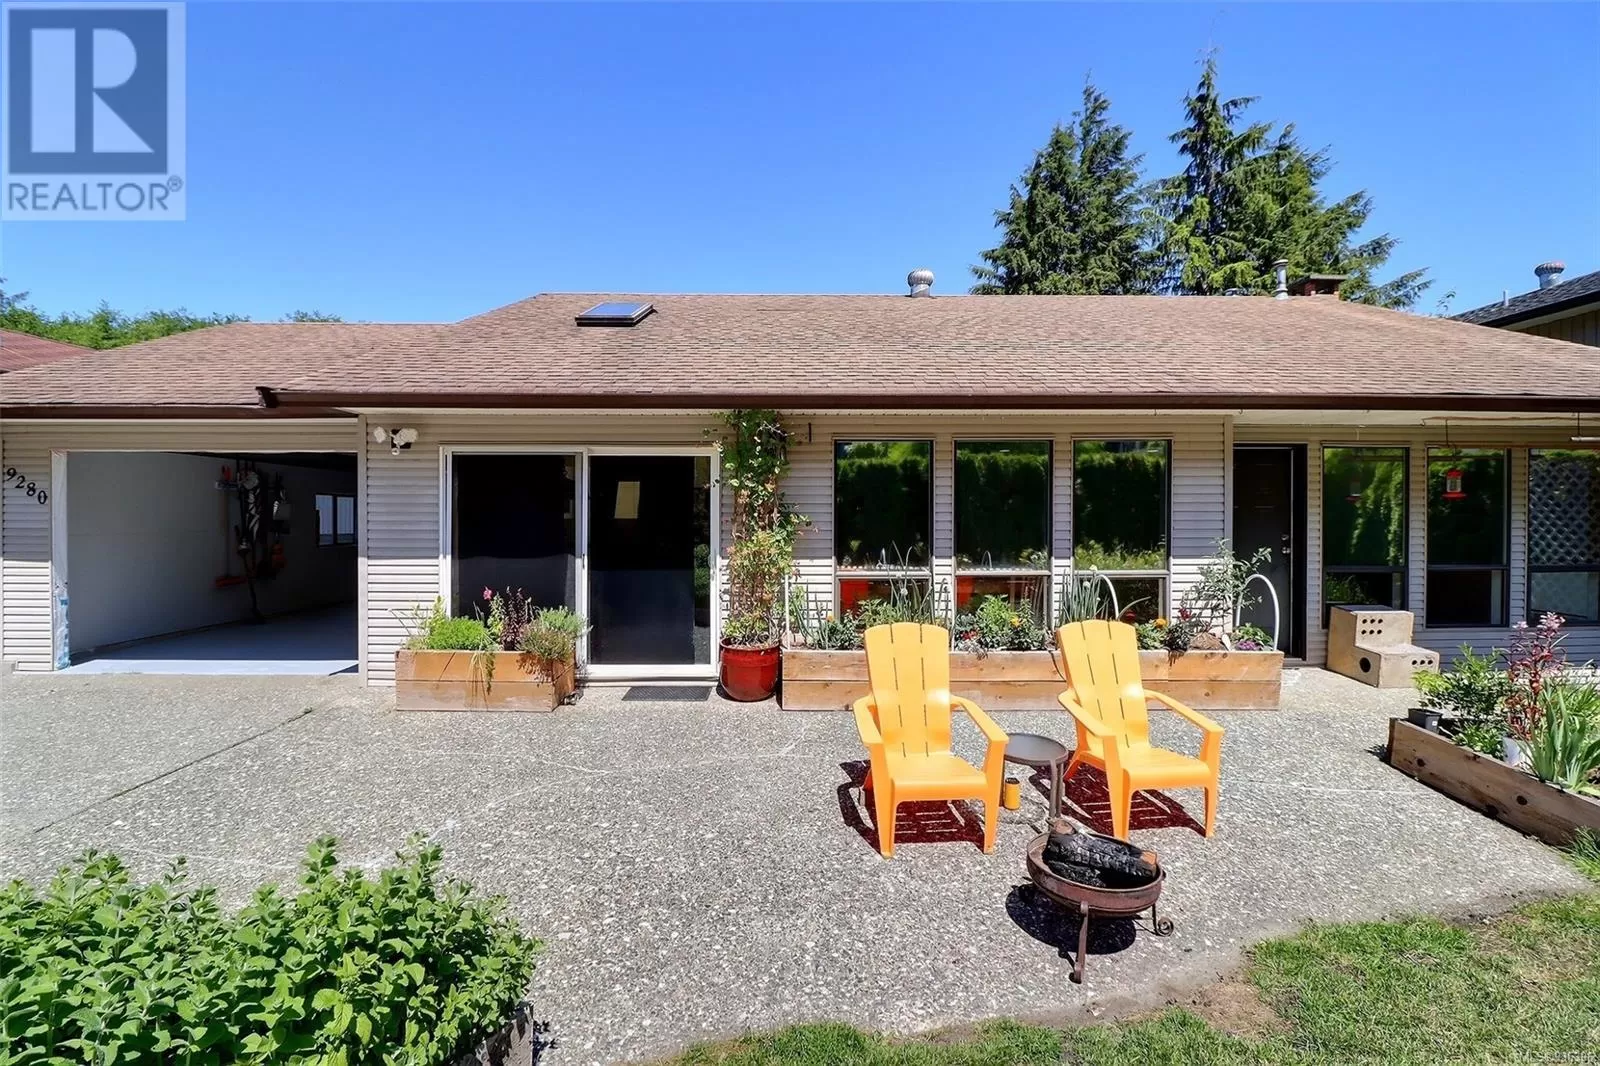 House for rent: 9280 Elk Dr, Port Hardy, British Columbia V0N 2P0